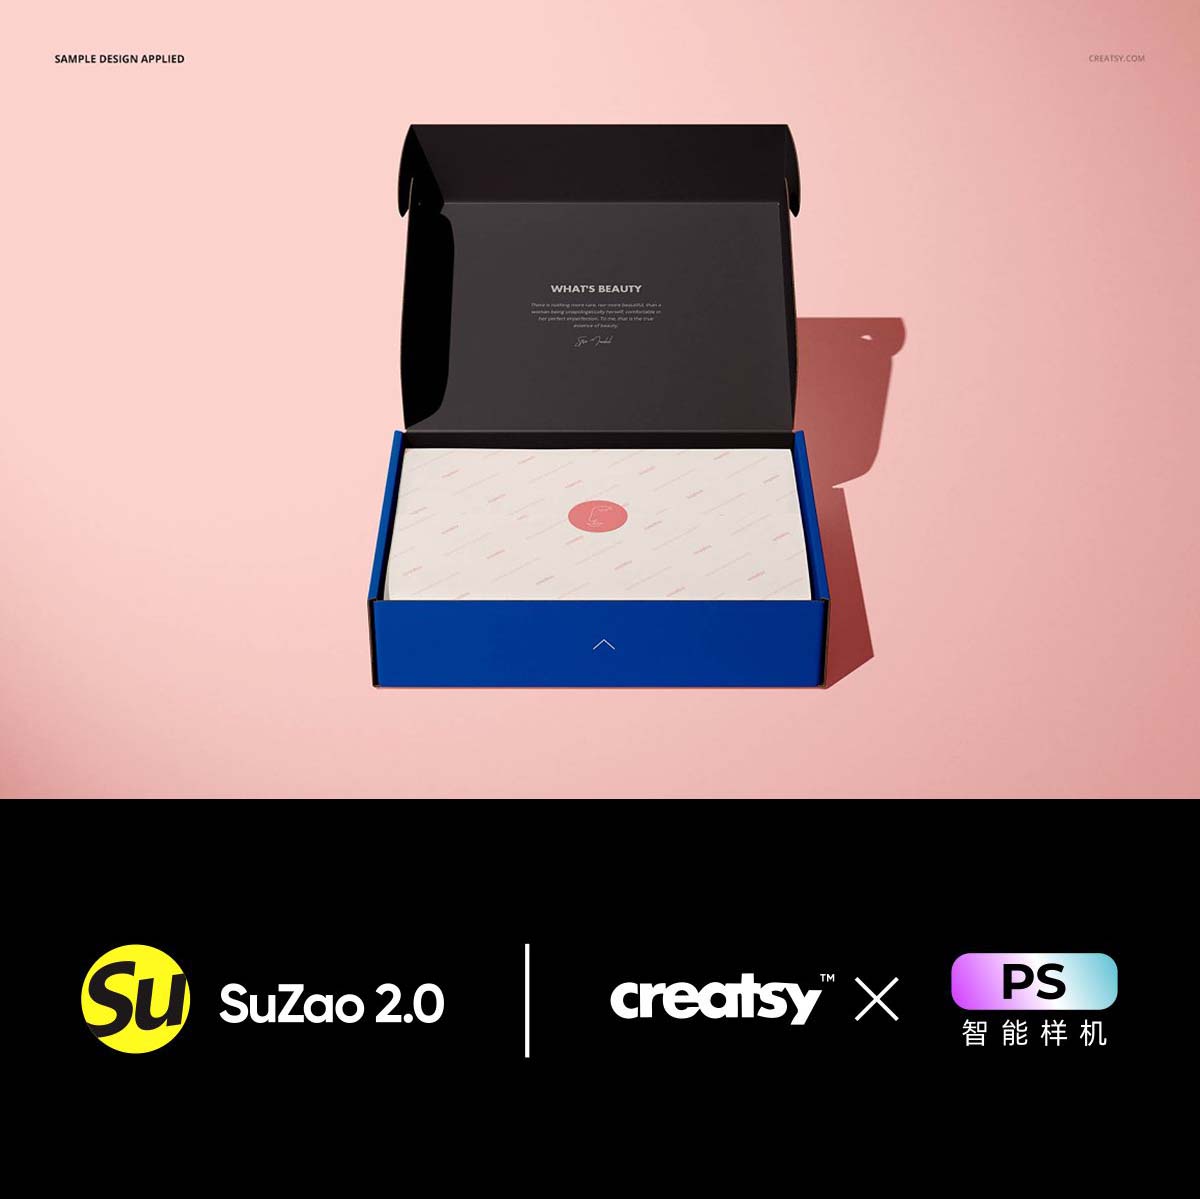 盒子品牌礼物包装设计样机品牌设计展开图展示creatsys样机源文件